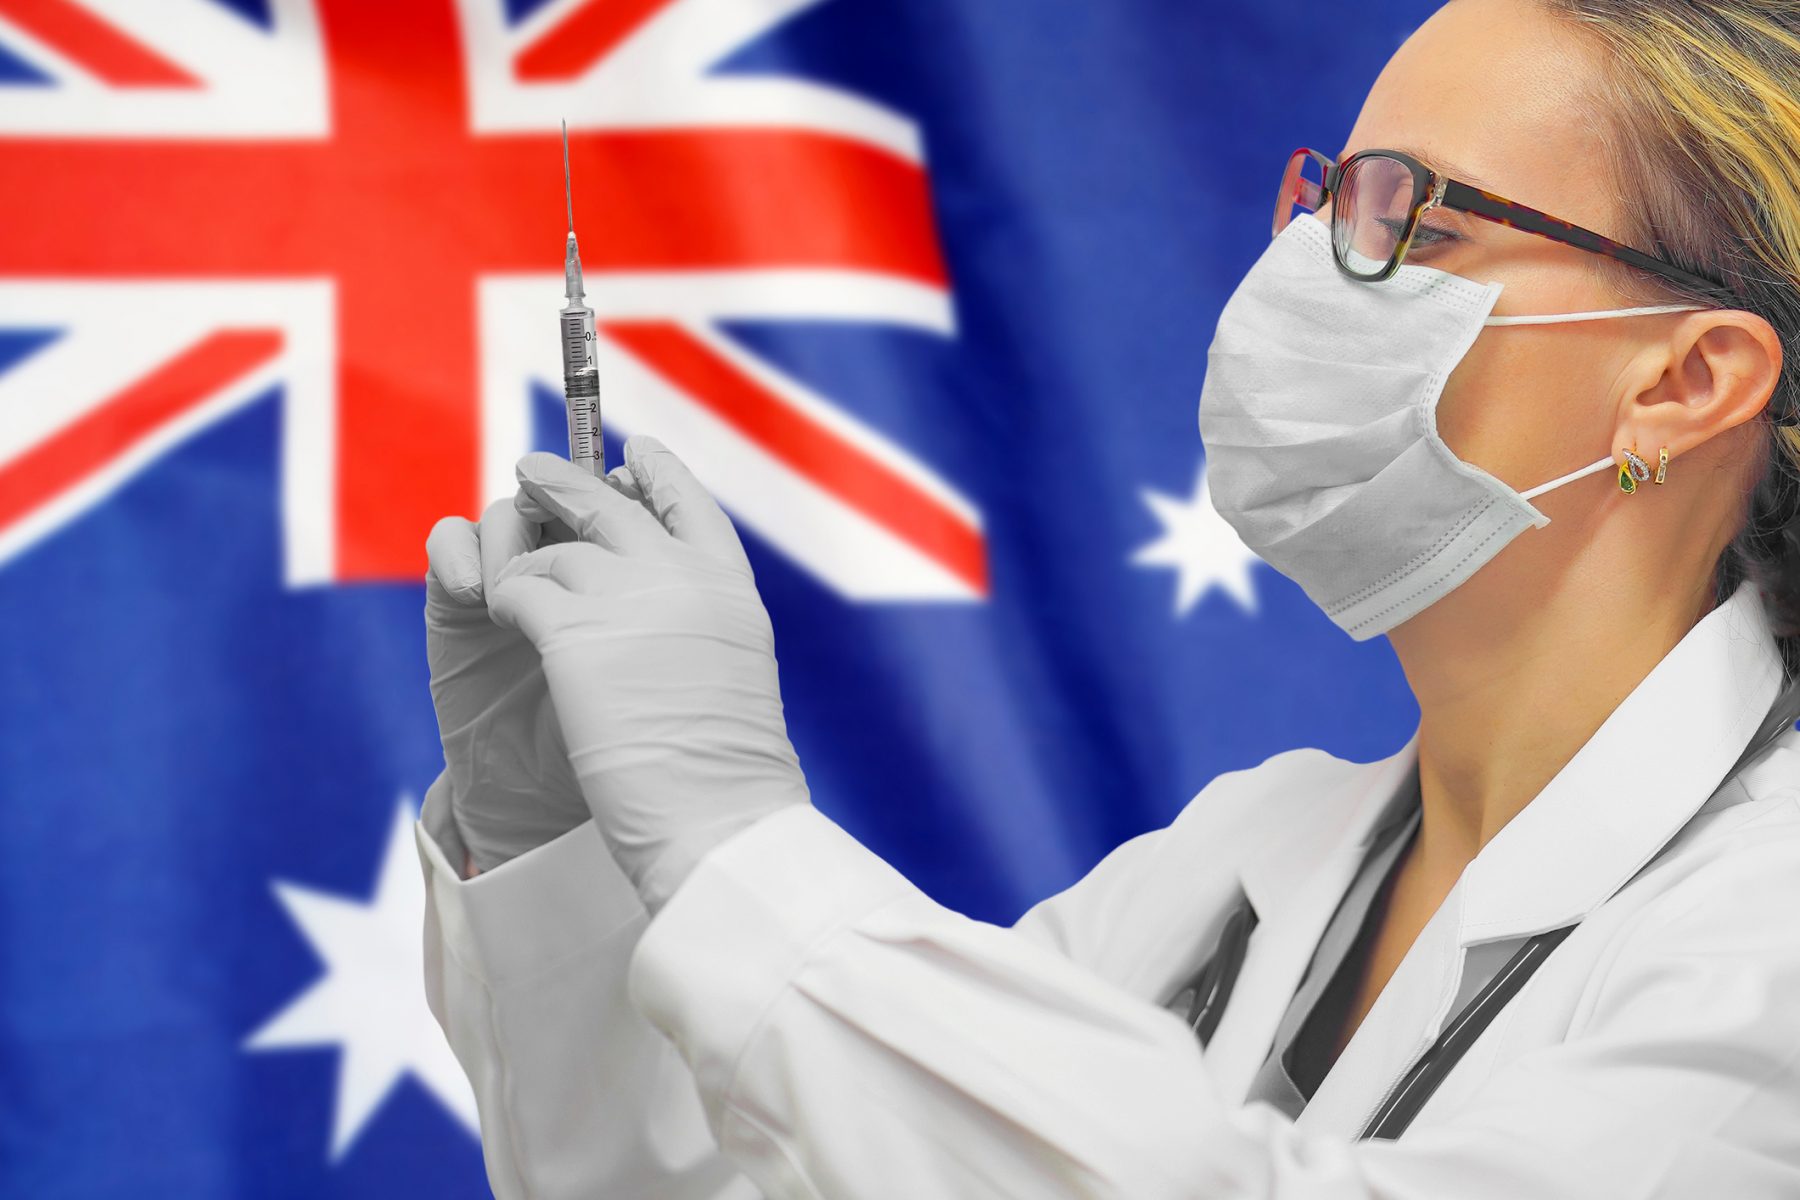 Αυστραλία κορωνοϊός: Η Αυστραλία μειώνει τον χρόνο για την αναμνηστική δόση εμβολίου σε 5 μήνες